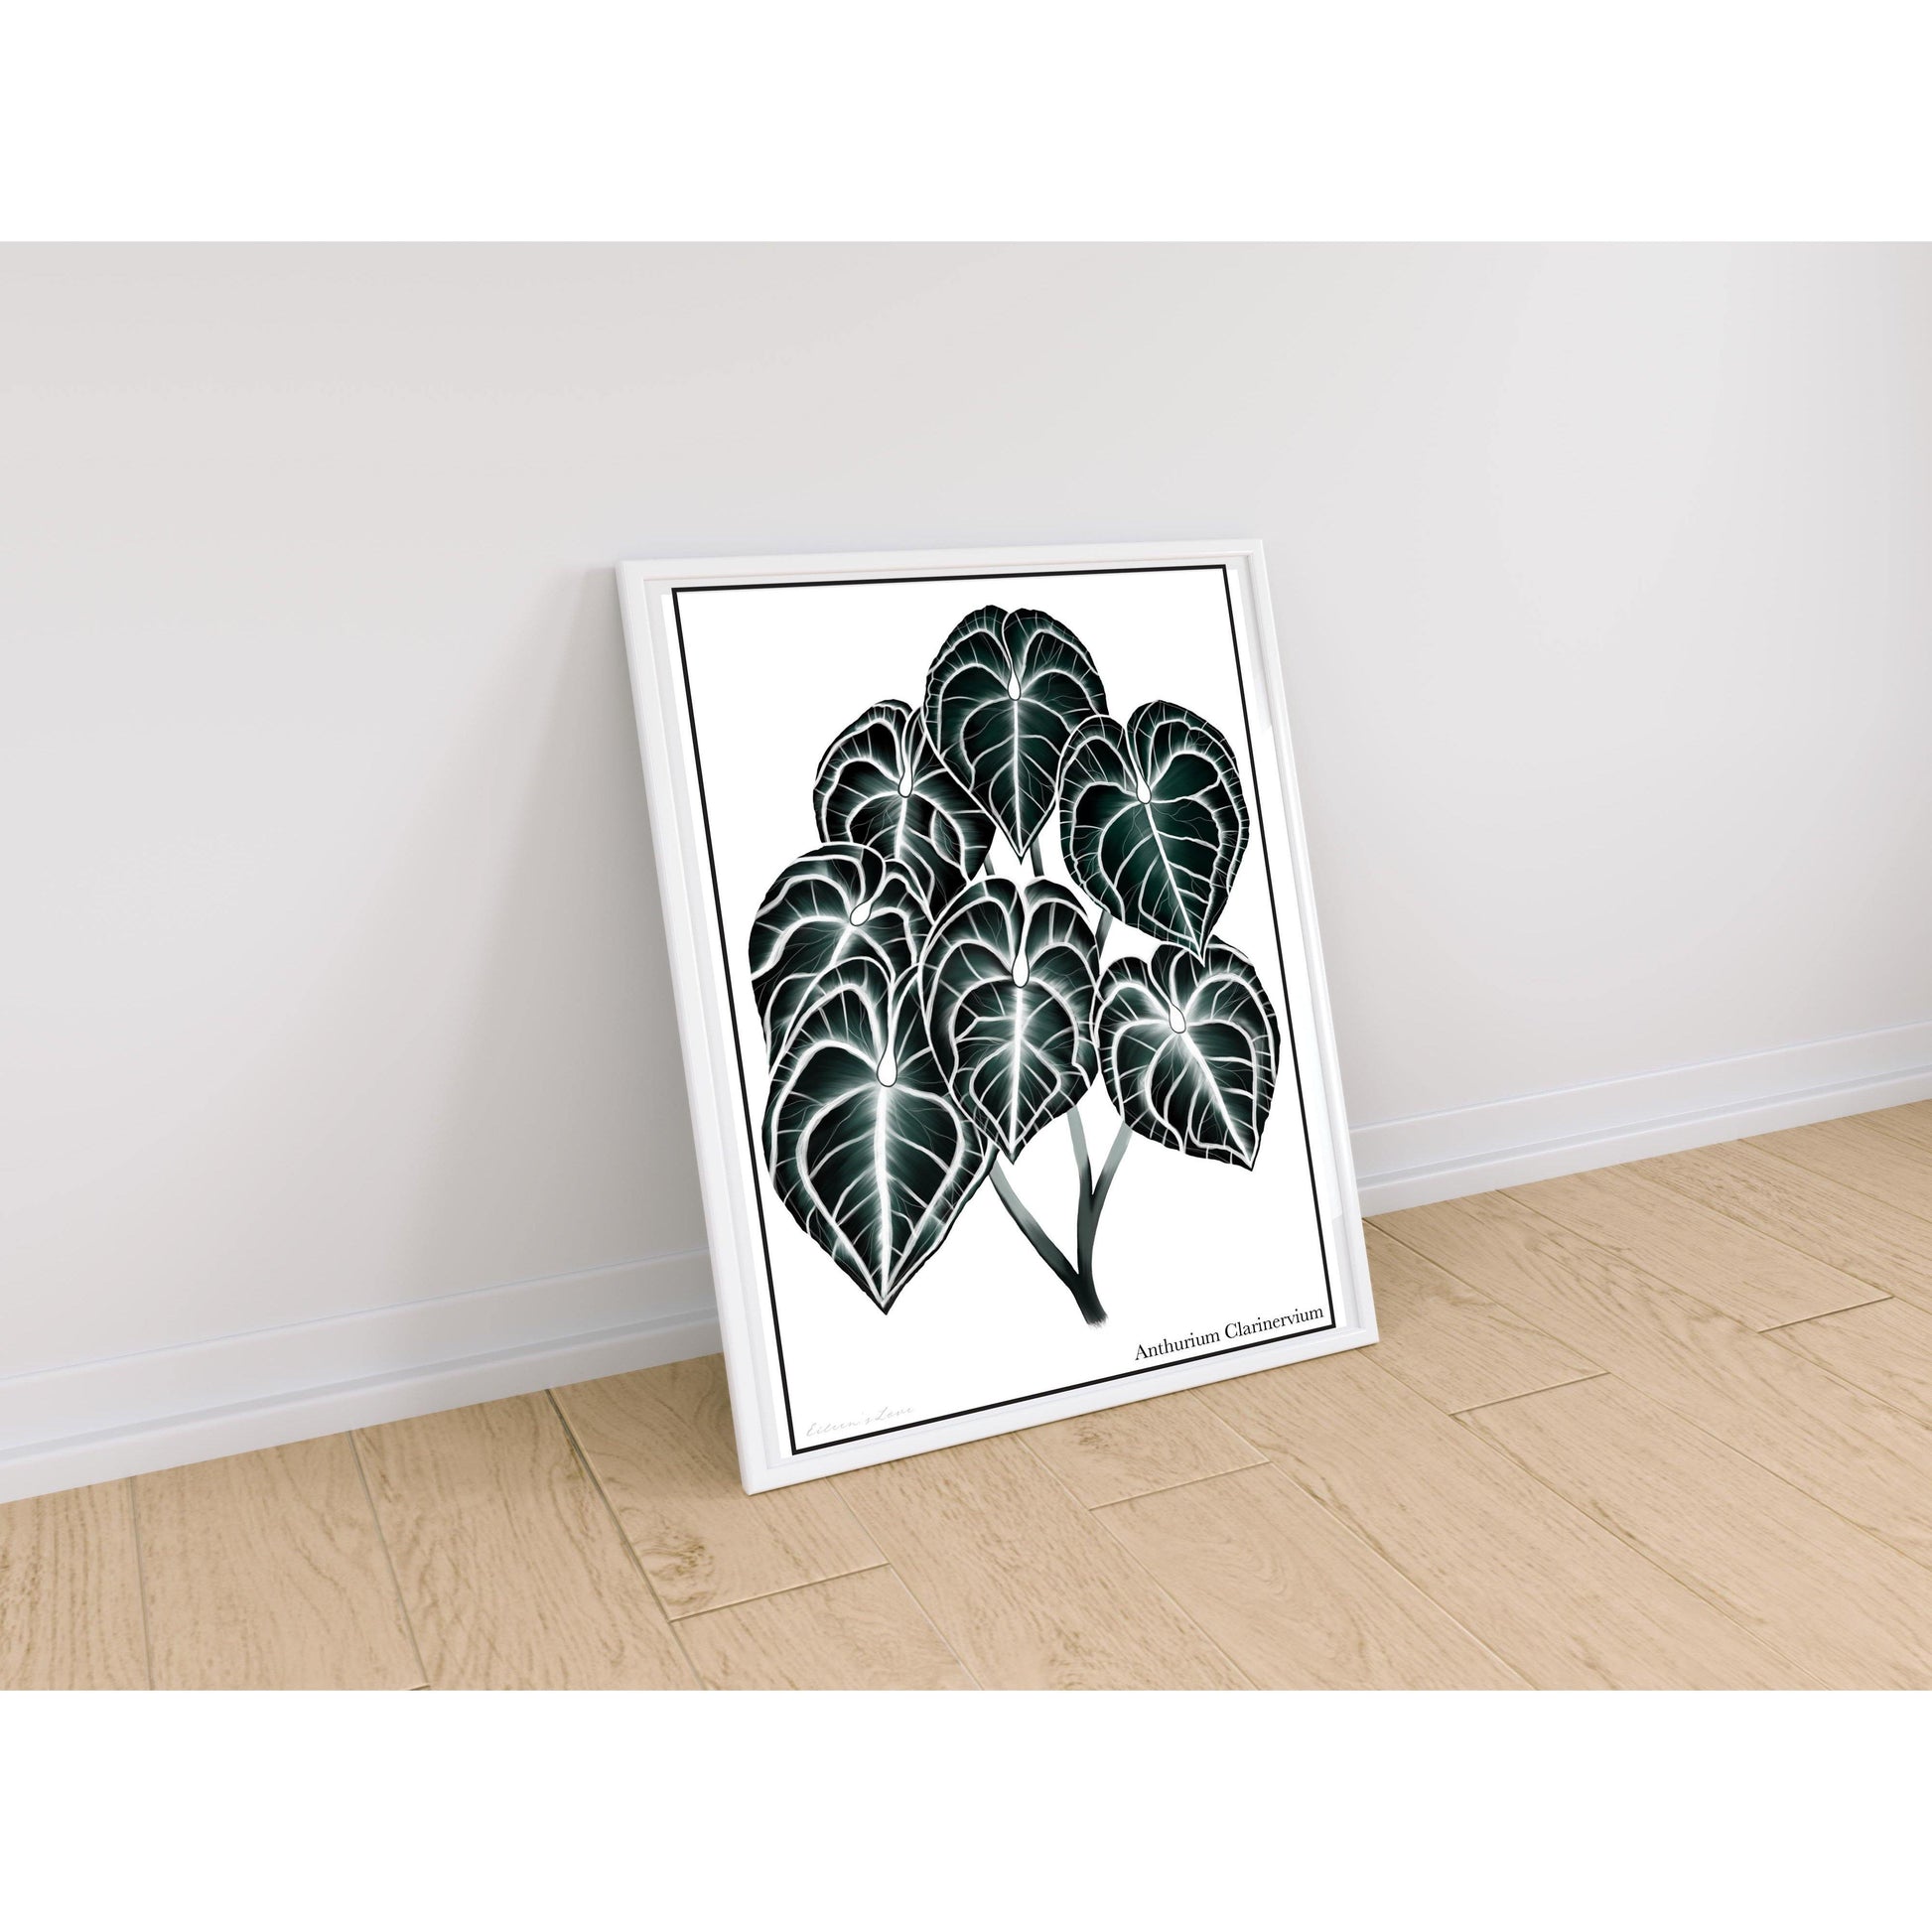 Anthurium Clarinervium artwork in white frame